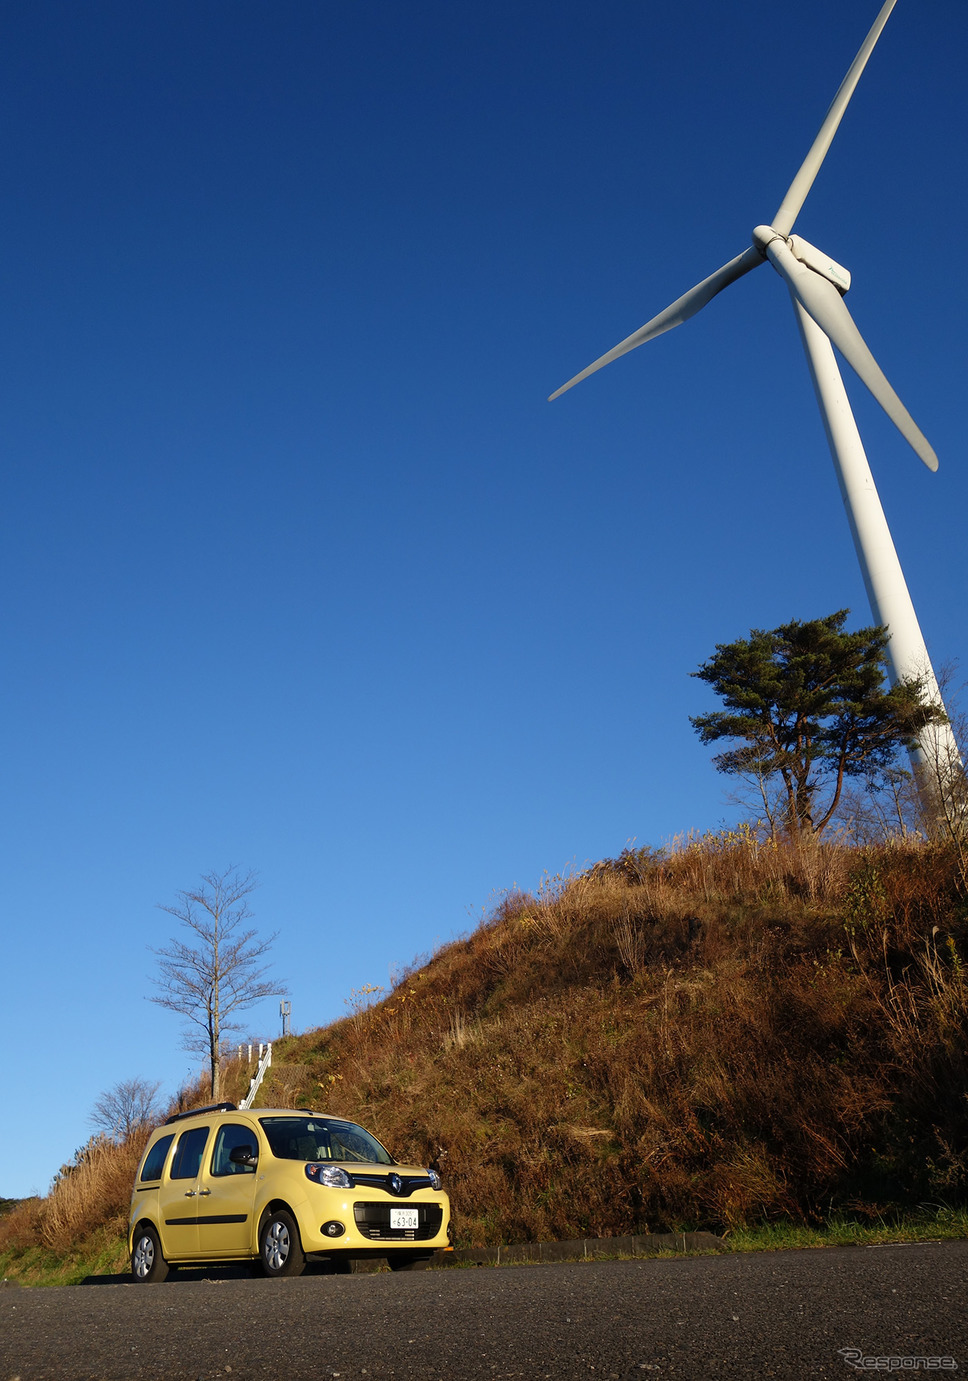 ルノー カングー ZEN 1.2 EDC。茨城北部、プラトーさとみの風力発電機をバックに記念撮影。《写真撮影 井元康一郎》